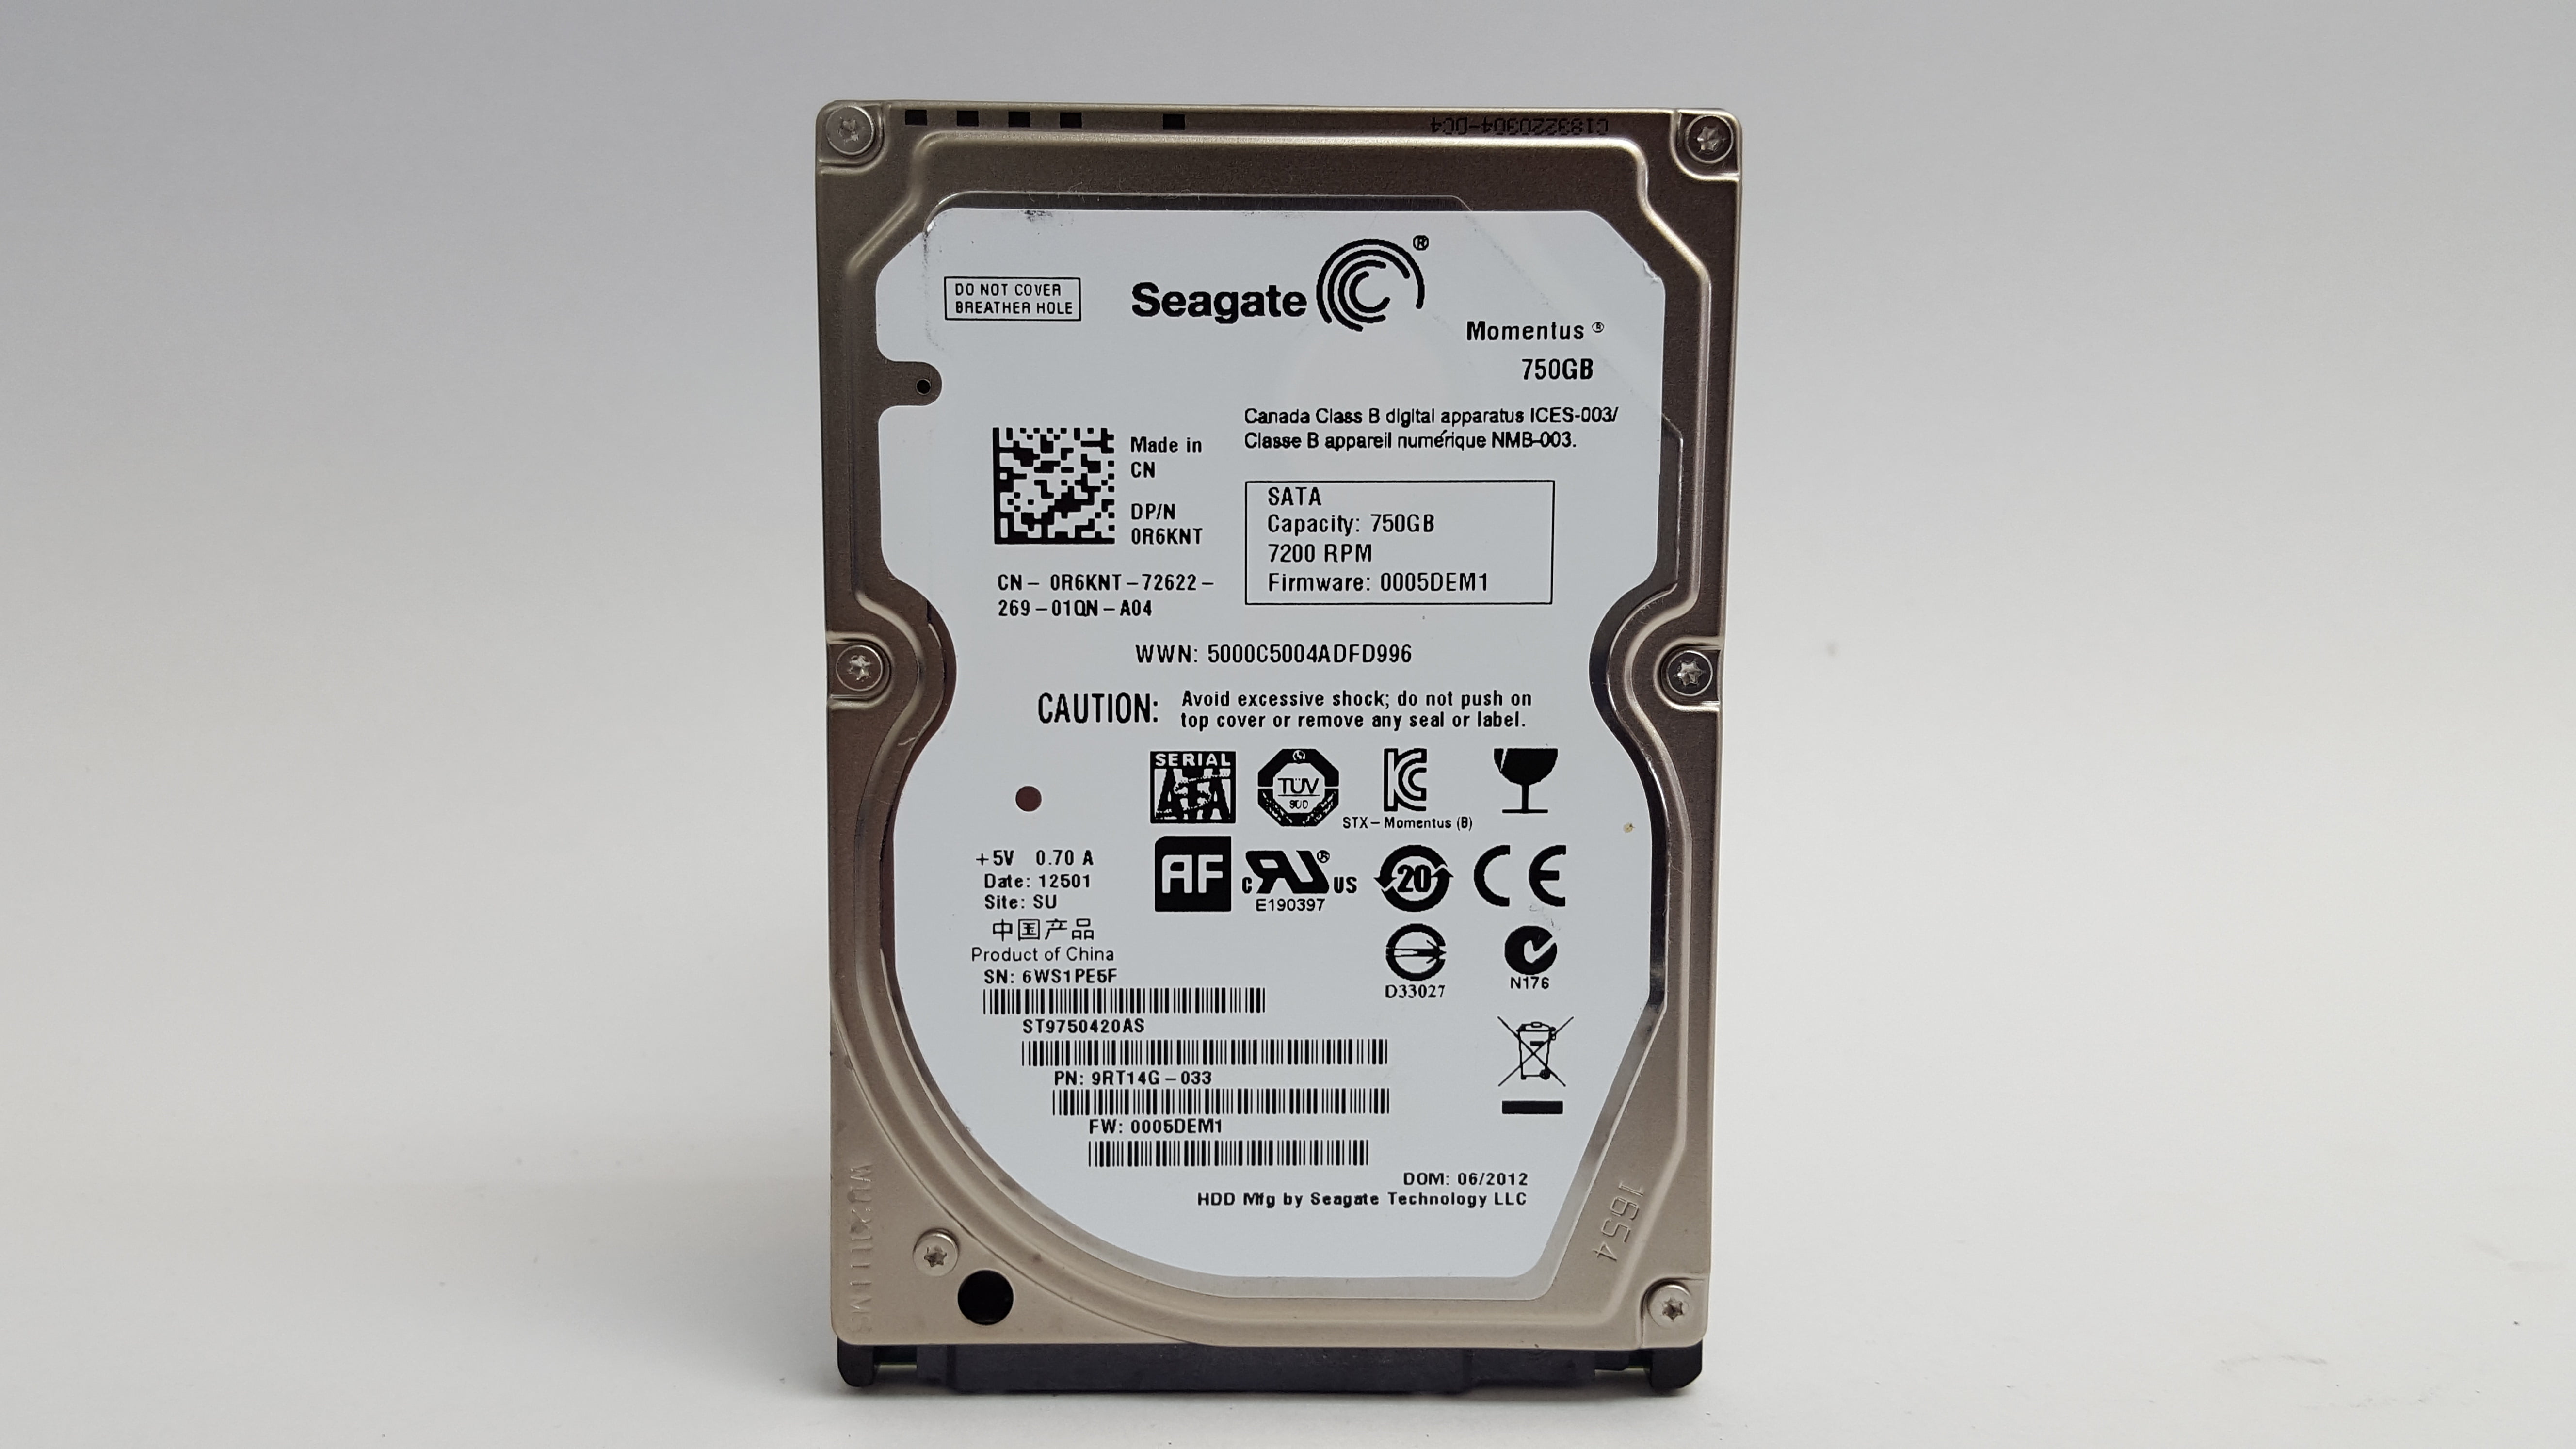 Refurbished Seagate Momentus ST9750420AS 750GB 2.5" SATA II Laptop Hard Drive